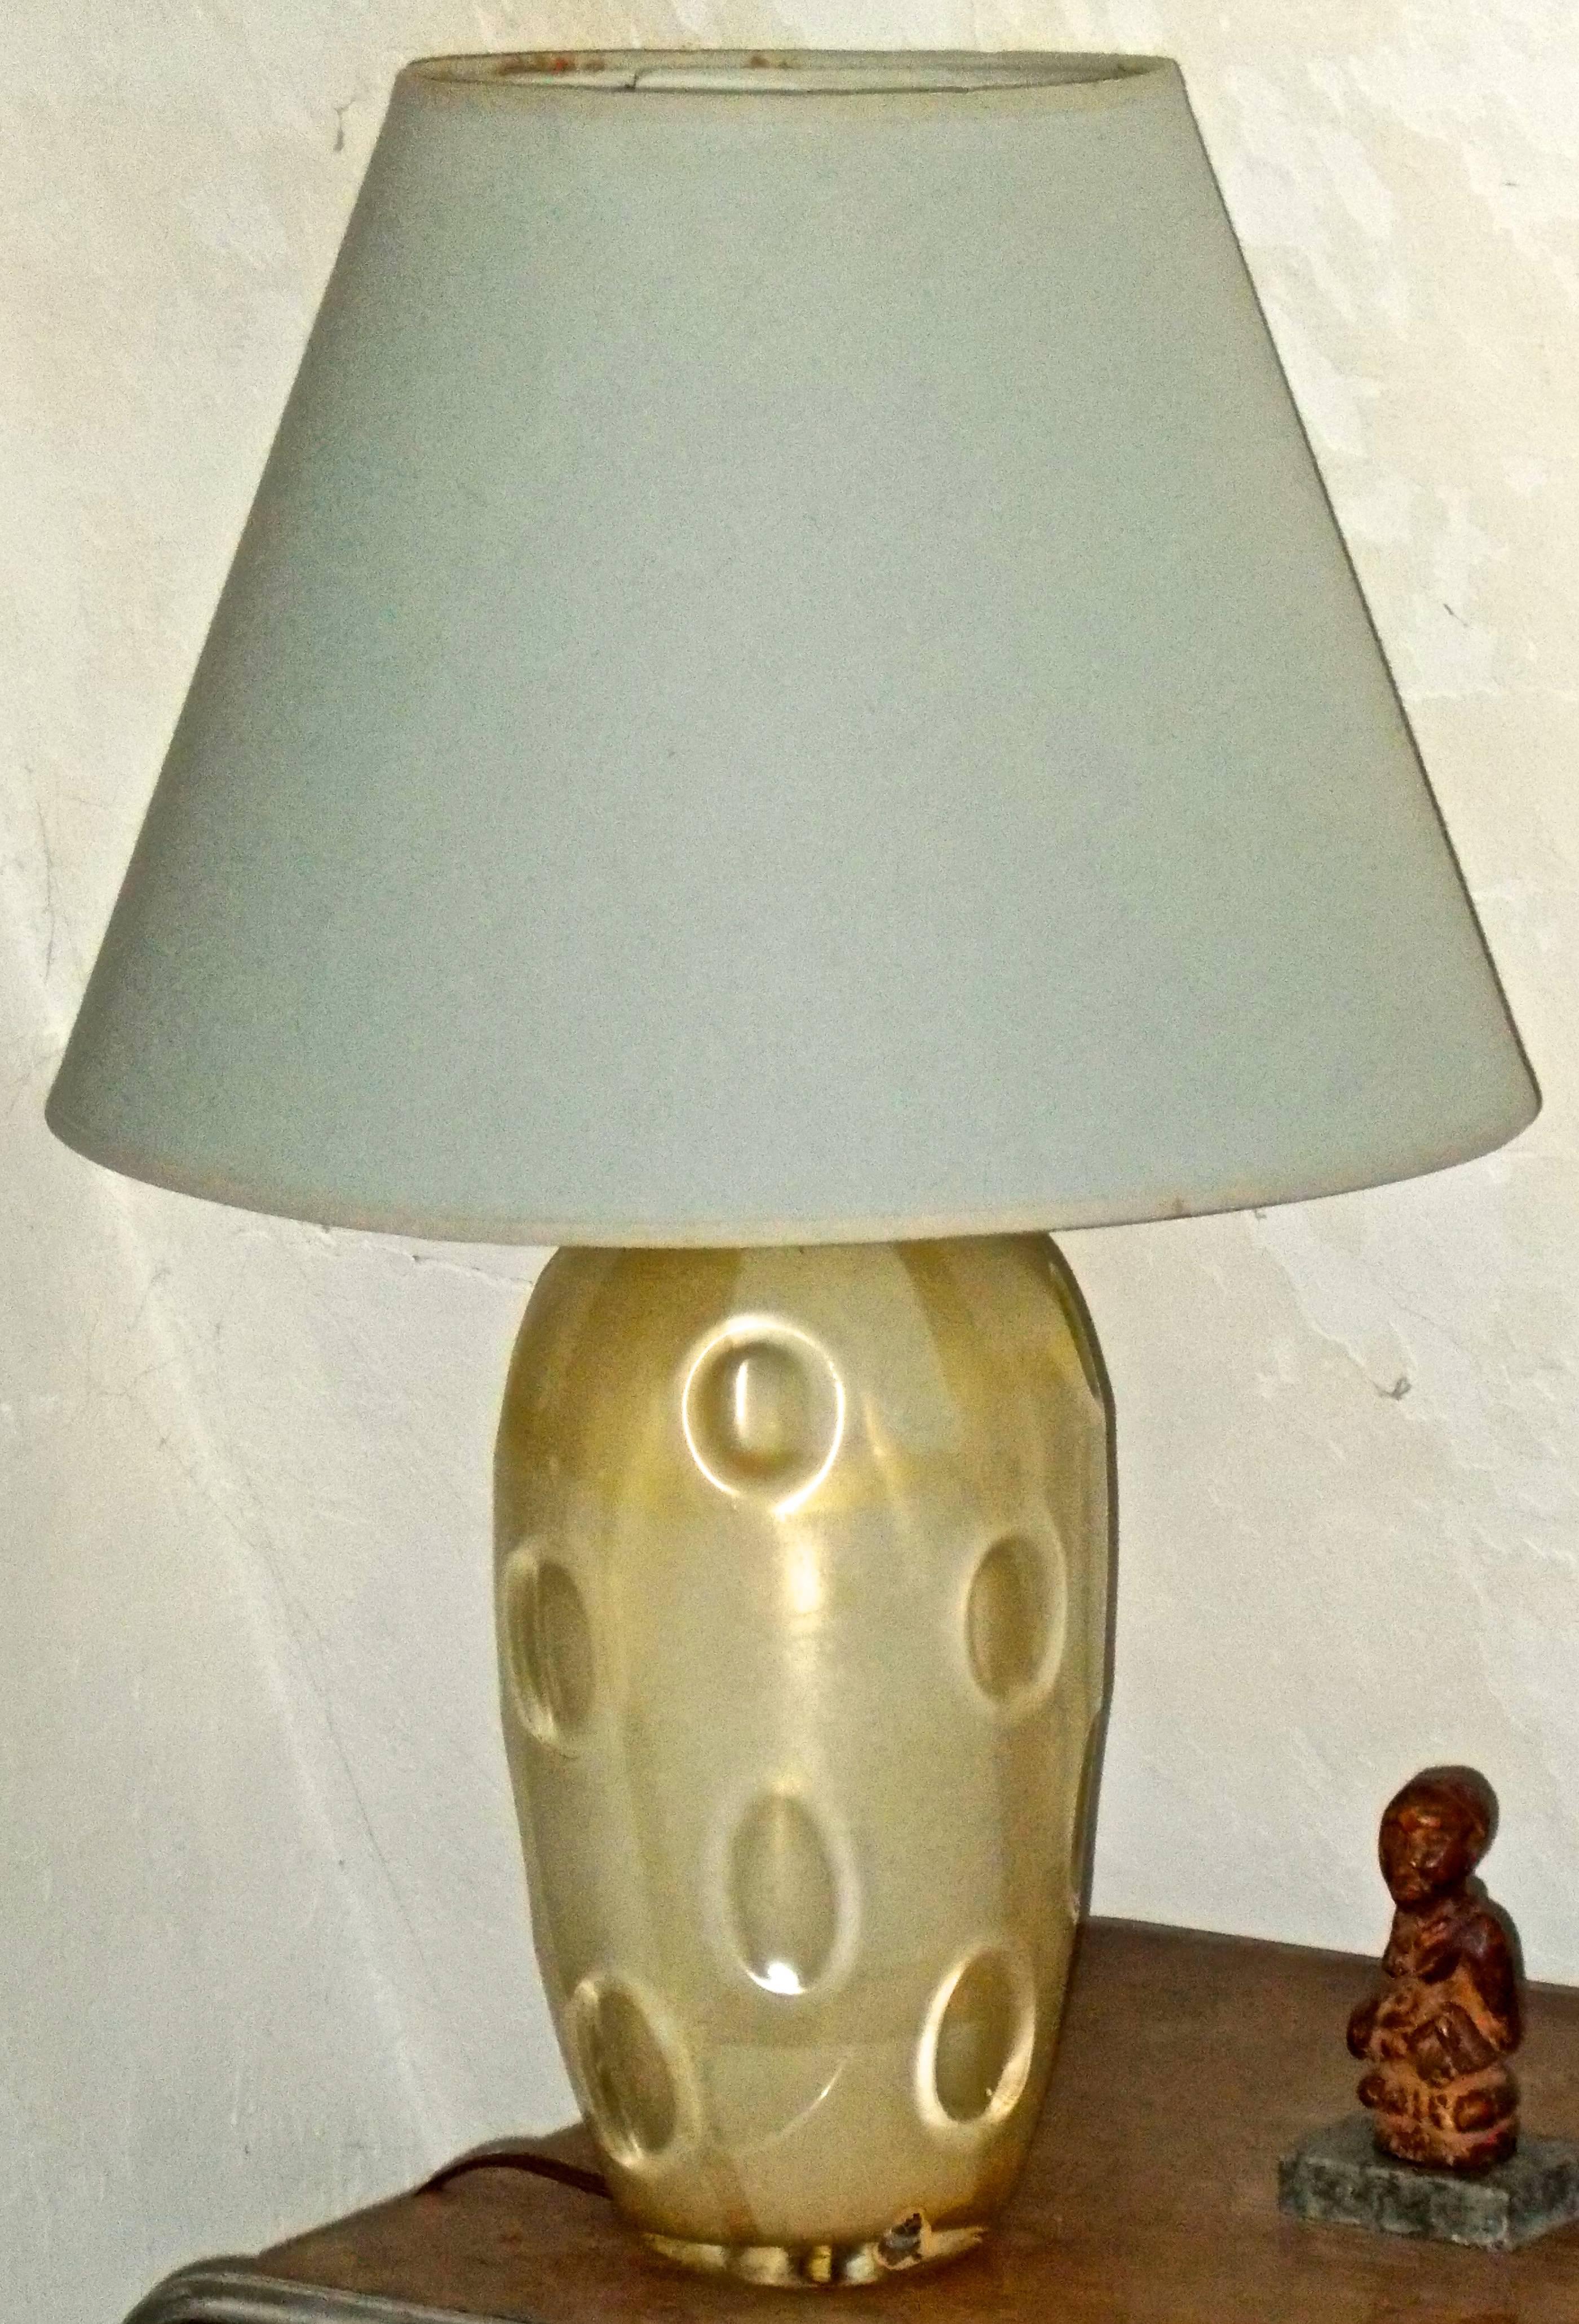 A Mazzega (Vetrerie d'Arte-Romano Mazzega) Murano Vetri lamp base, similar in style and technique to Carlo Scarpa. Signed with a rare surviving foil label.